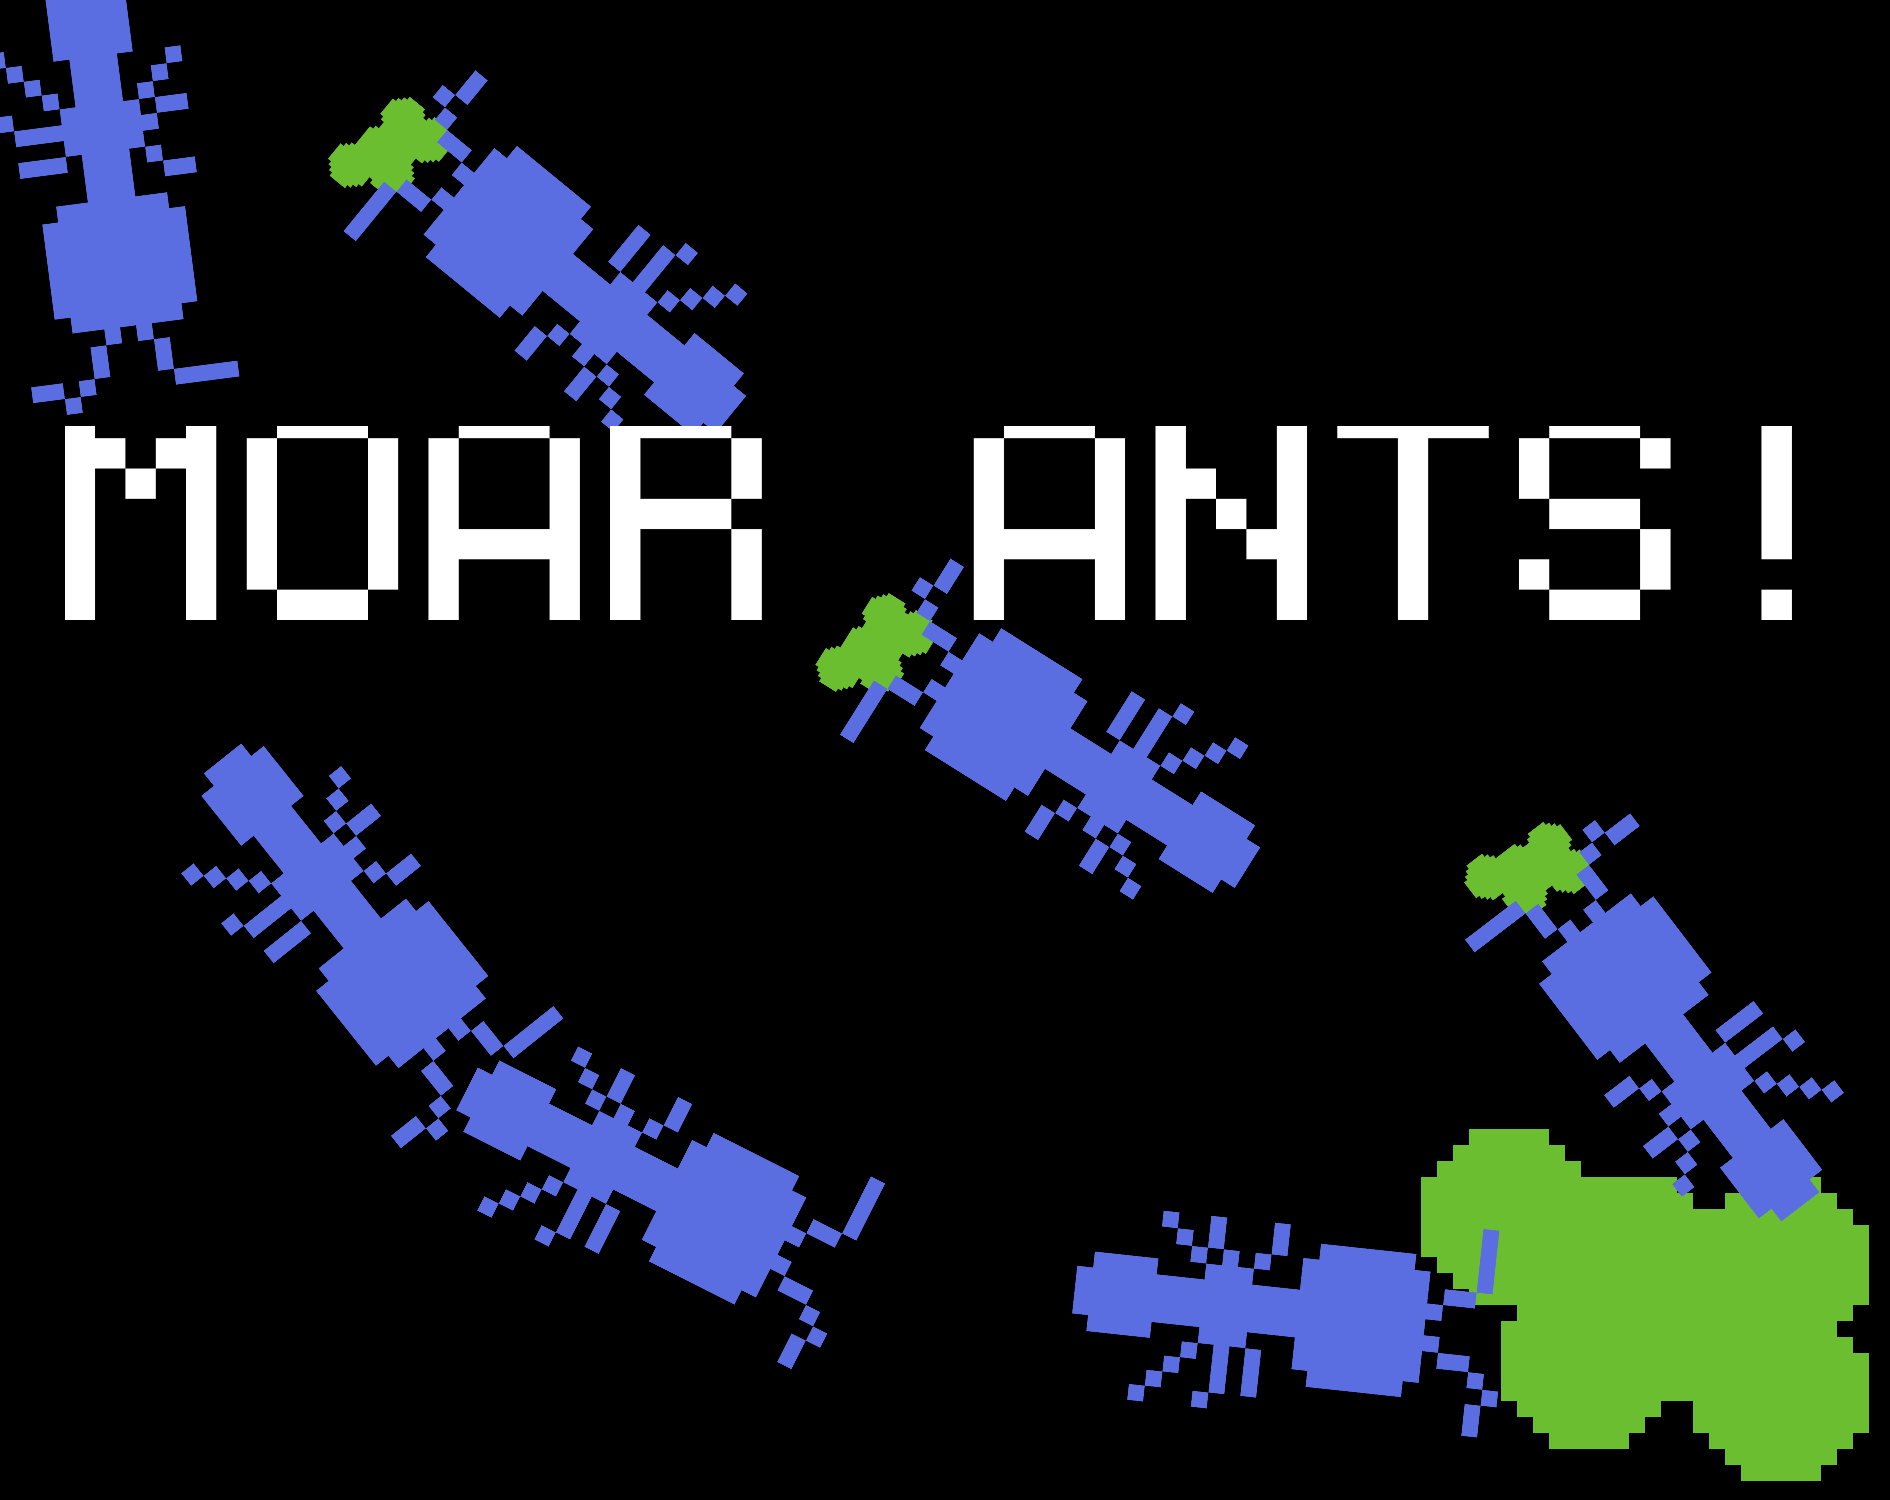 Moar Ants!